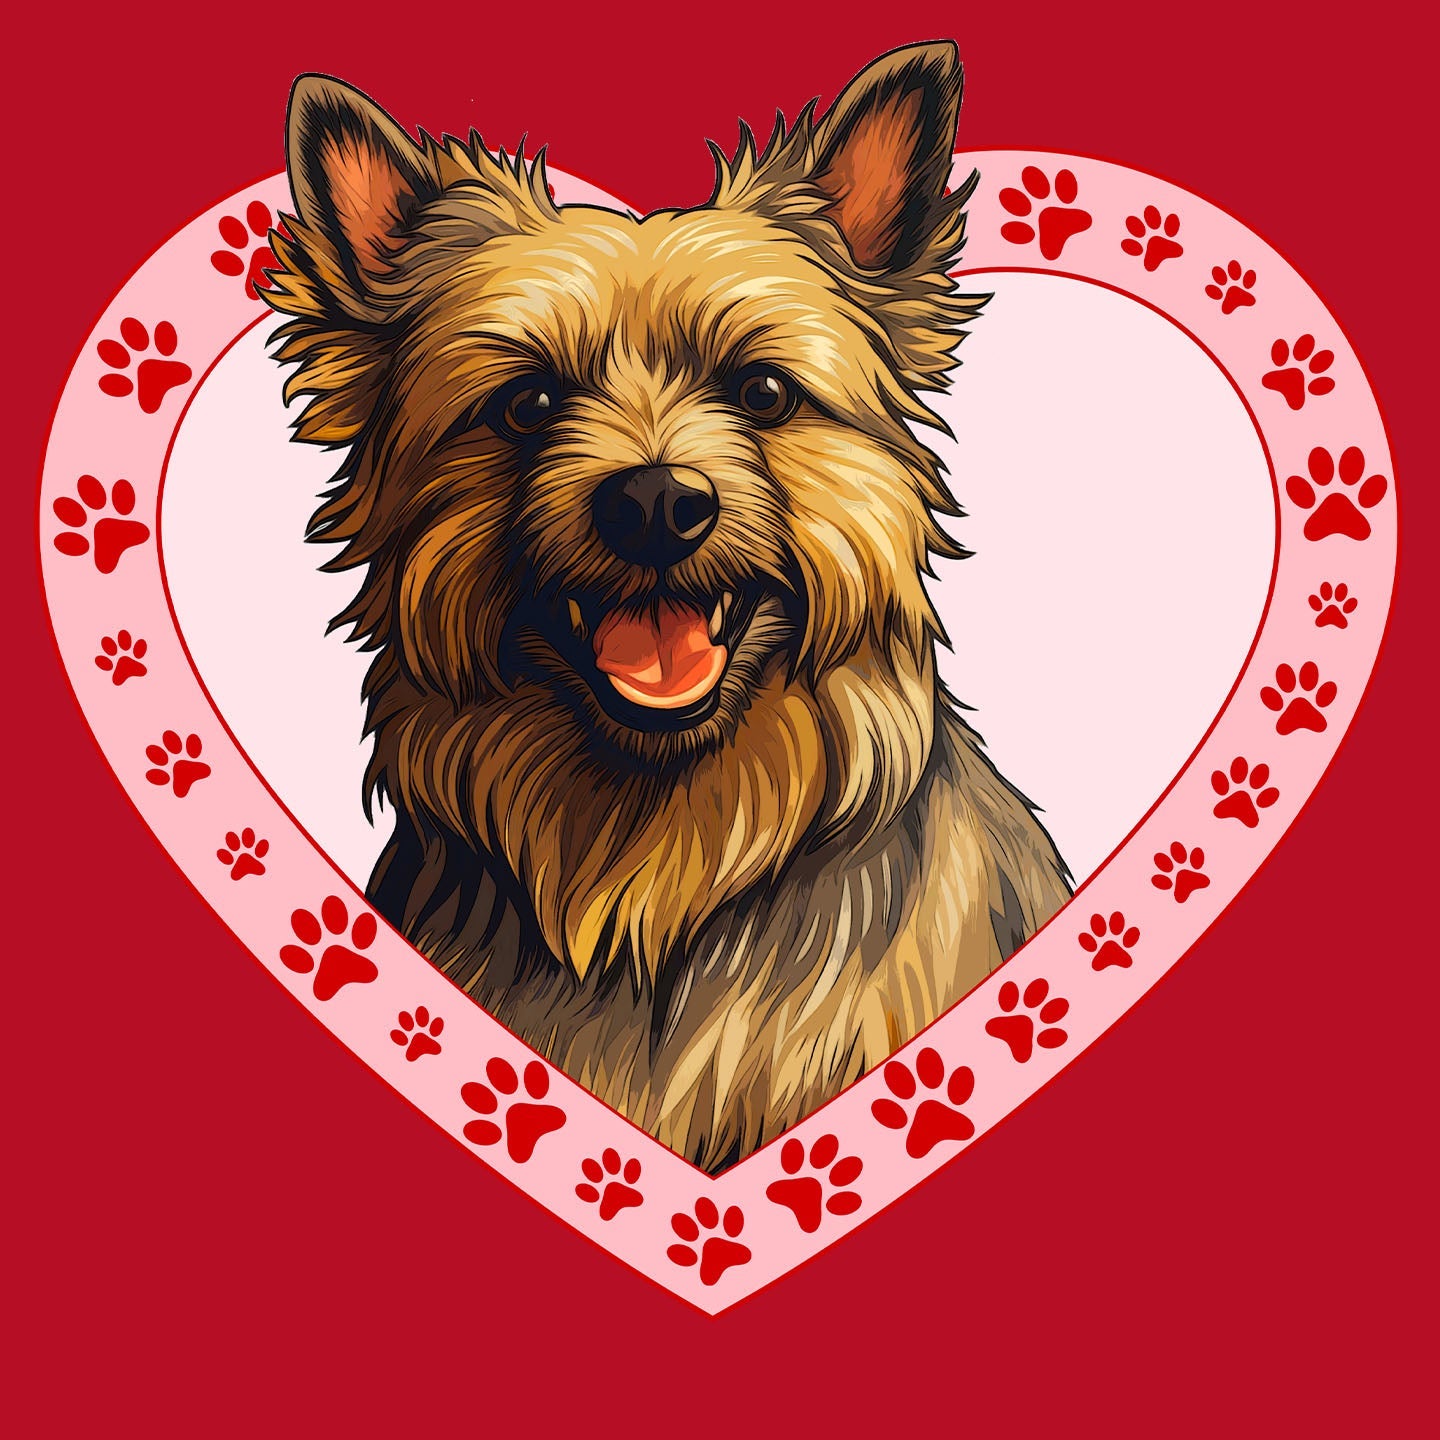 Australian Terrier Illustration In Heart - Women's V-Neck T-Shirt